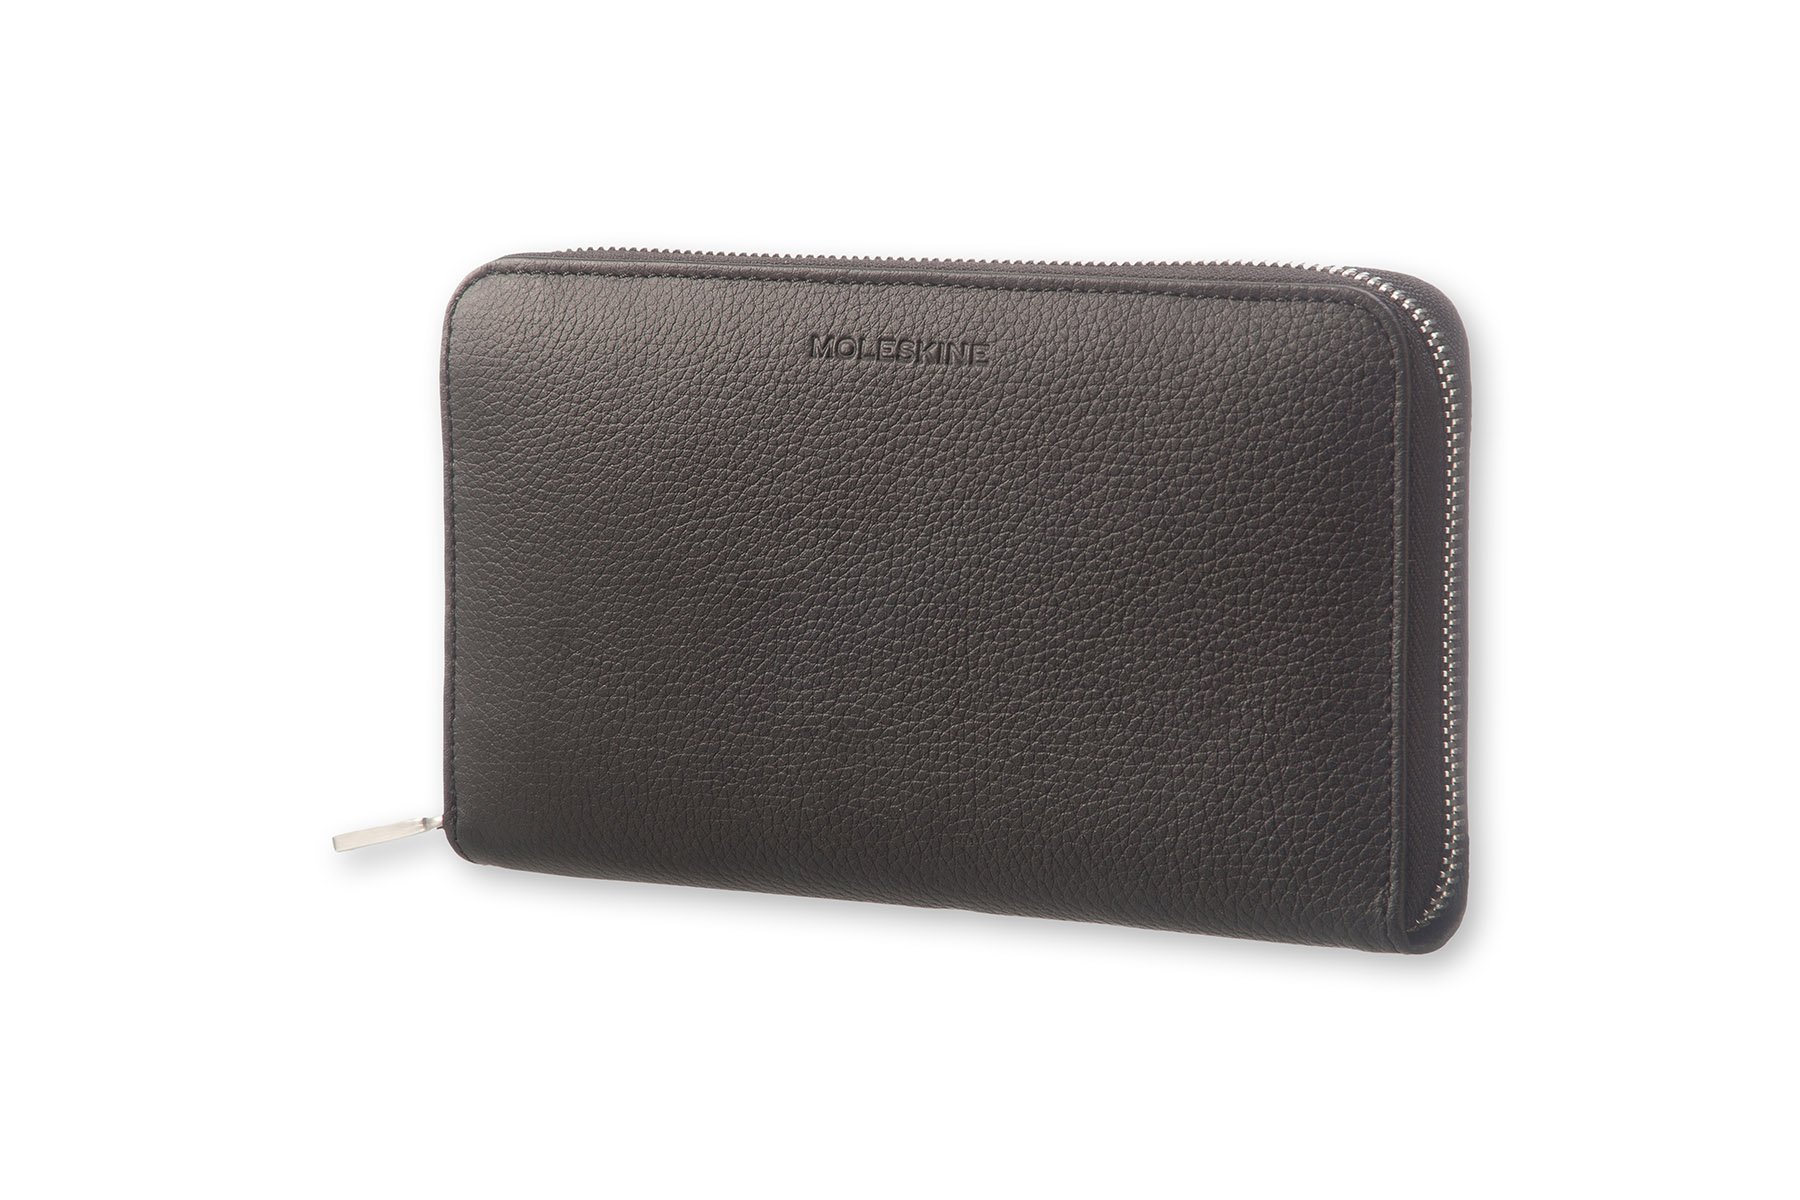 Moleskine Lineage Leather Zip Wallet